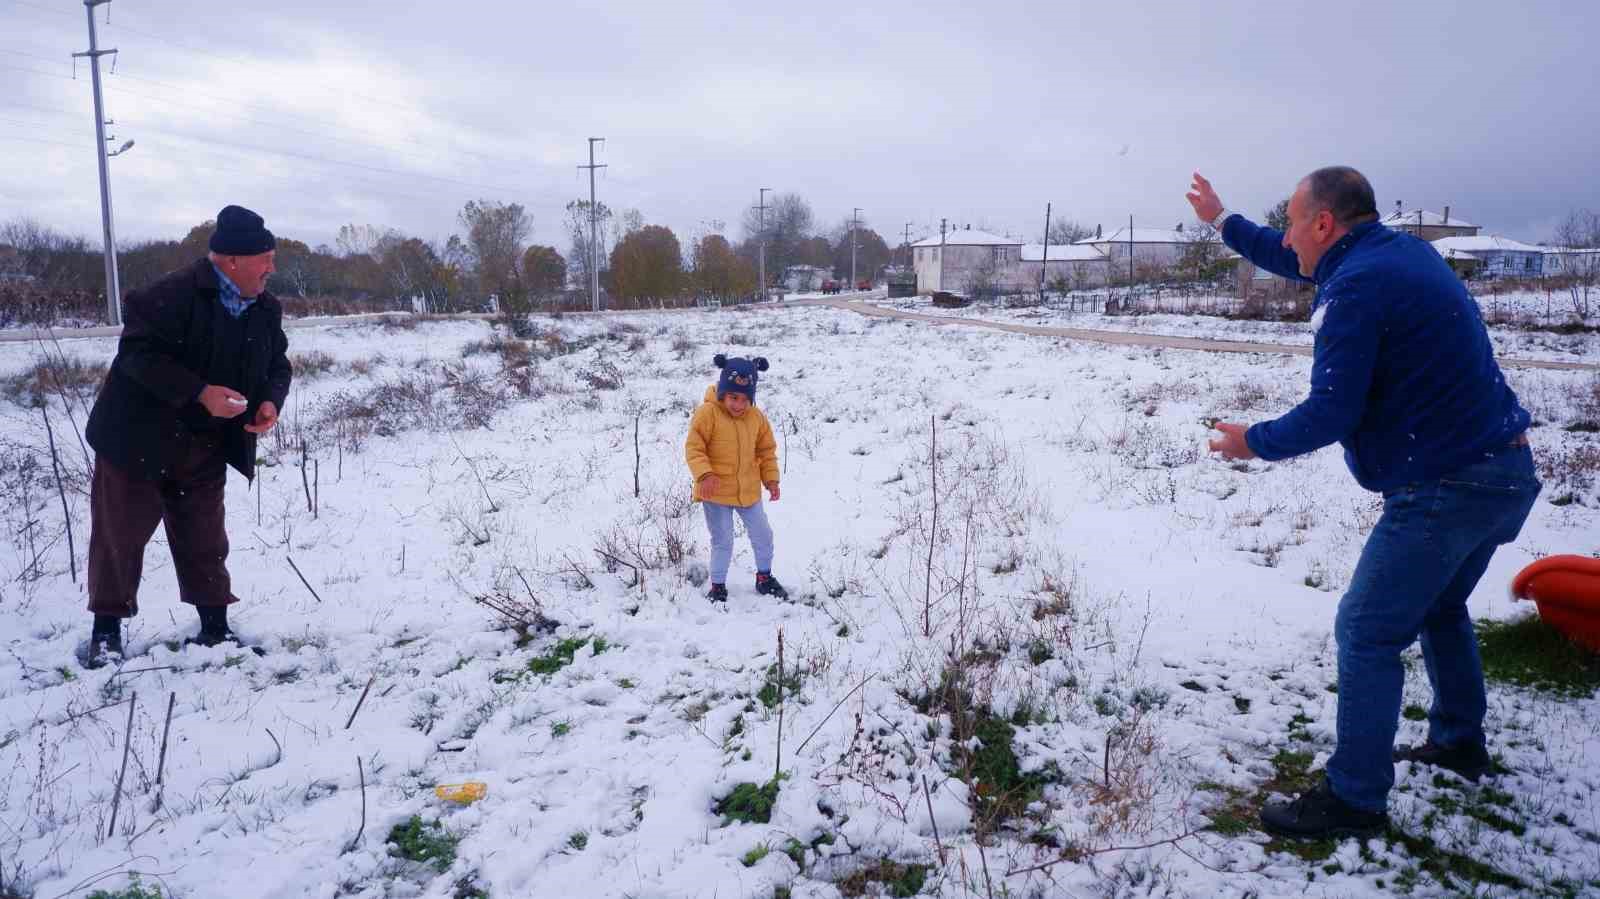 Edirne’de kar yağışı kartpostallık görüntüler oluşturdu
